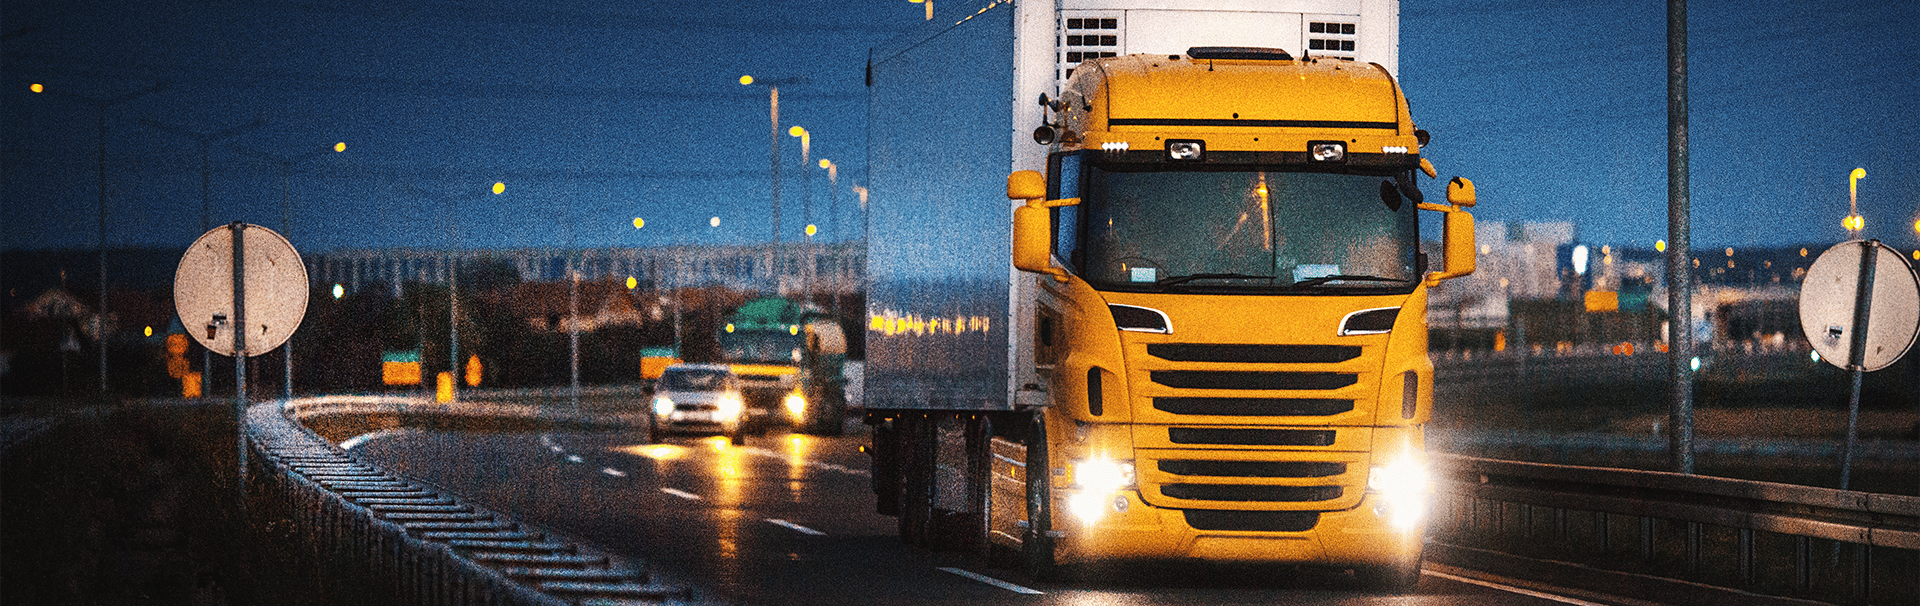 AdBlue-Knappheit könnte Lkw-Transport zum Stillstand bringen